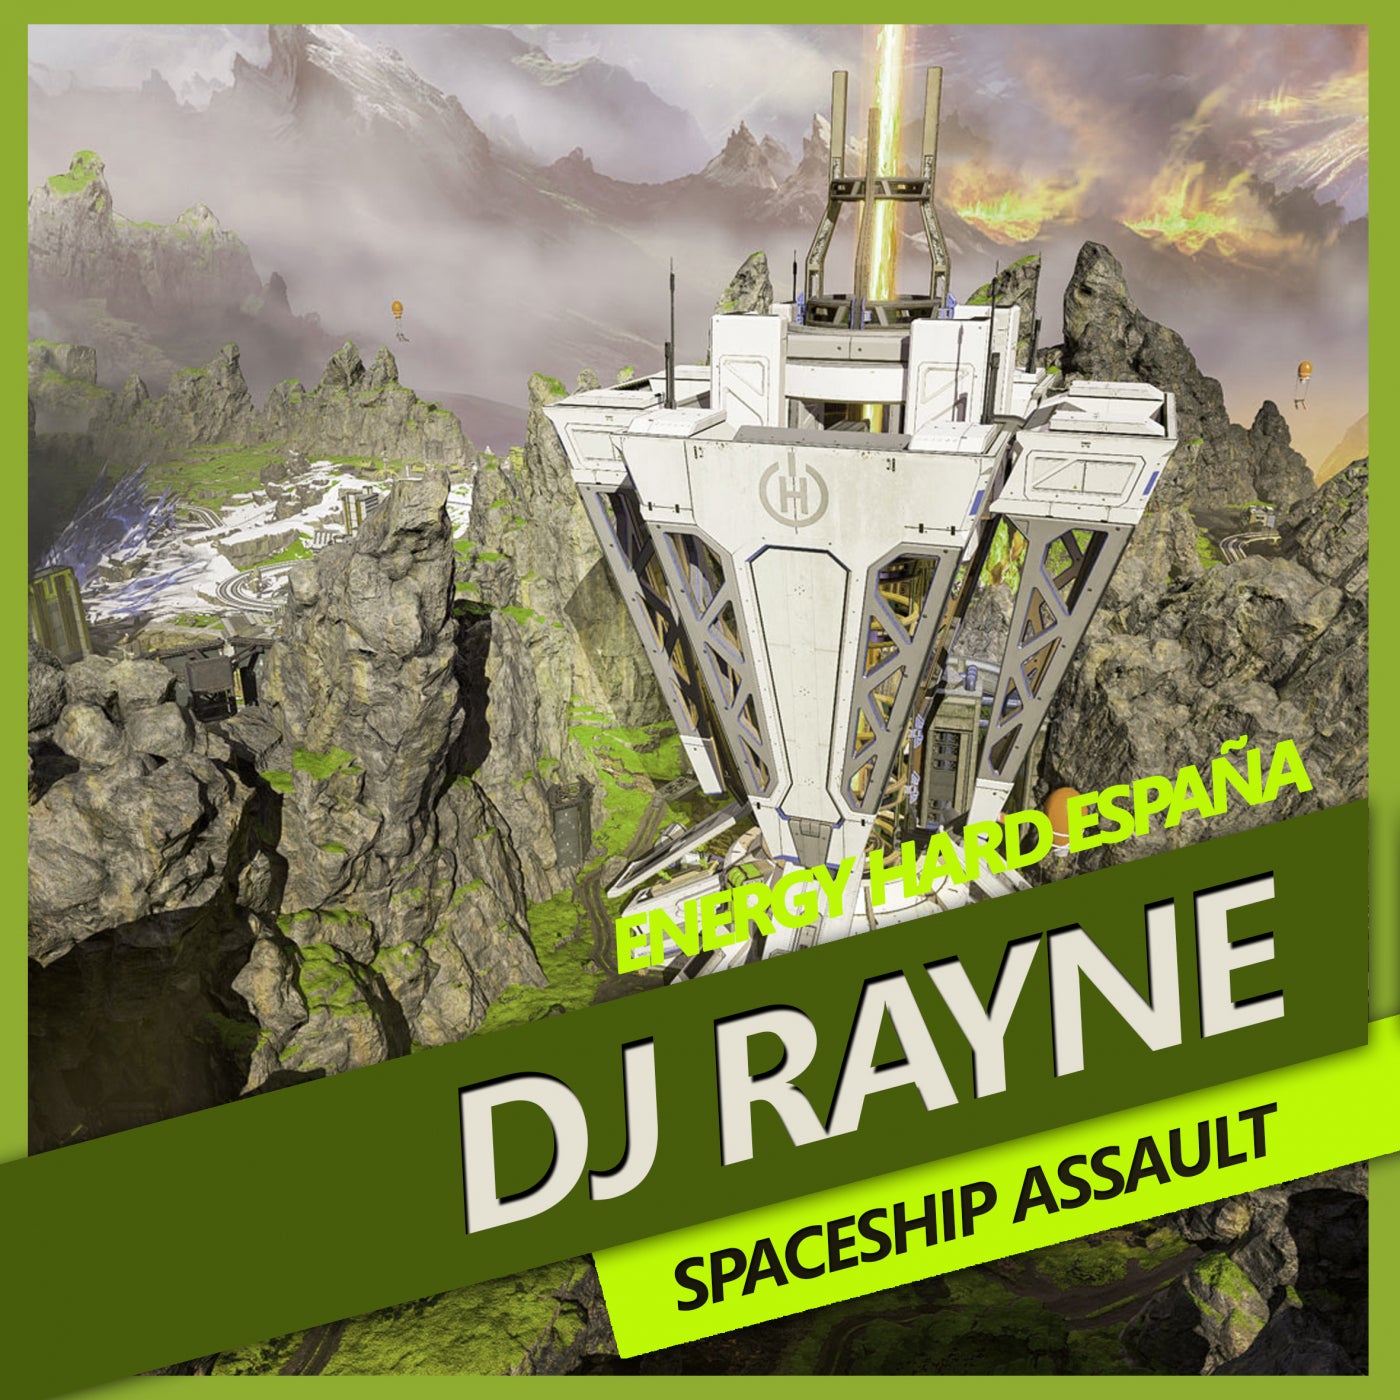 [EHE183] Dj Rayne - Spaceship Assault B4029bc9-c257-423d-8985-8a62b35c2d63